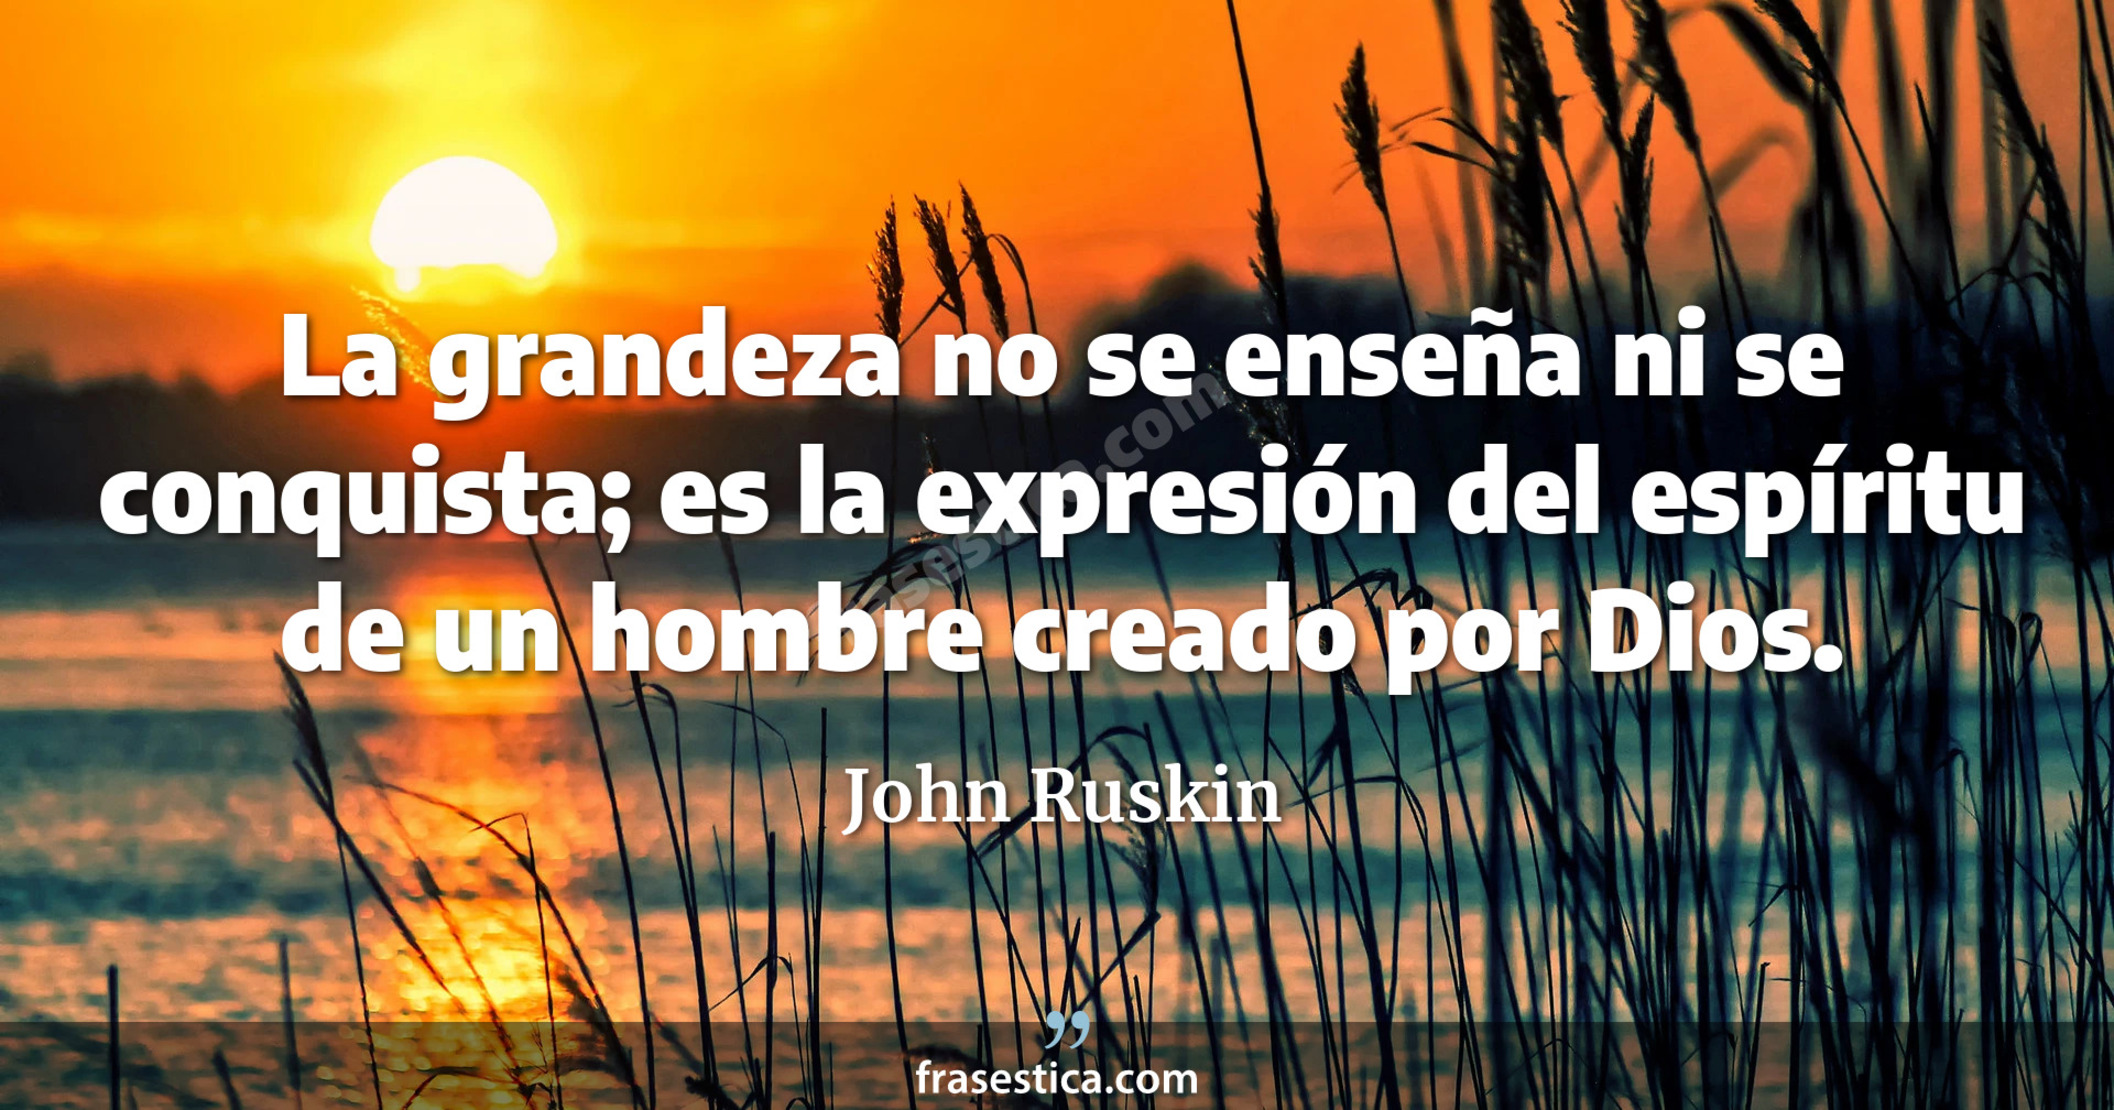 La grandeza no se enseña ni se conquista; es la expresión del espíritu de un hombre creado por Dios. - John Ruskin